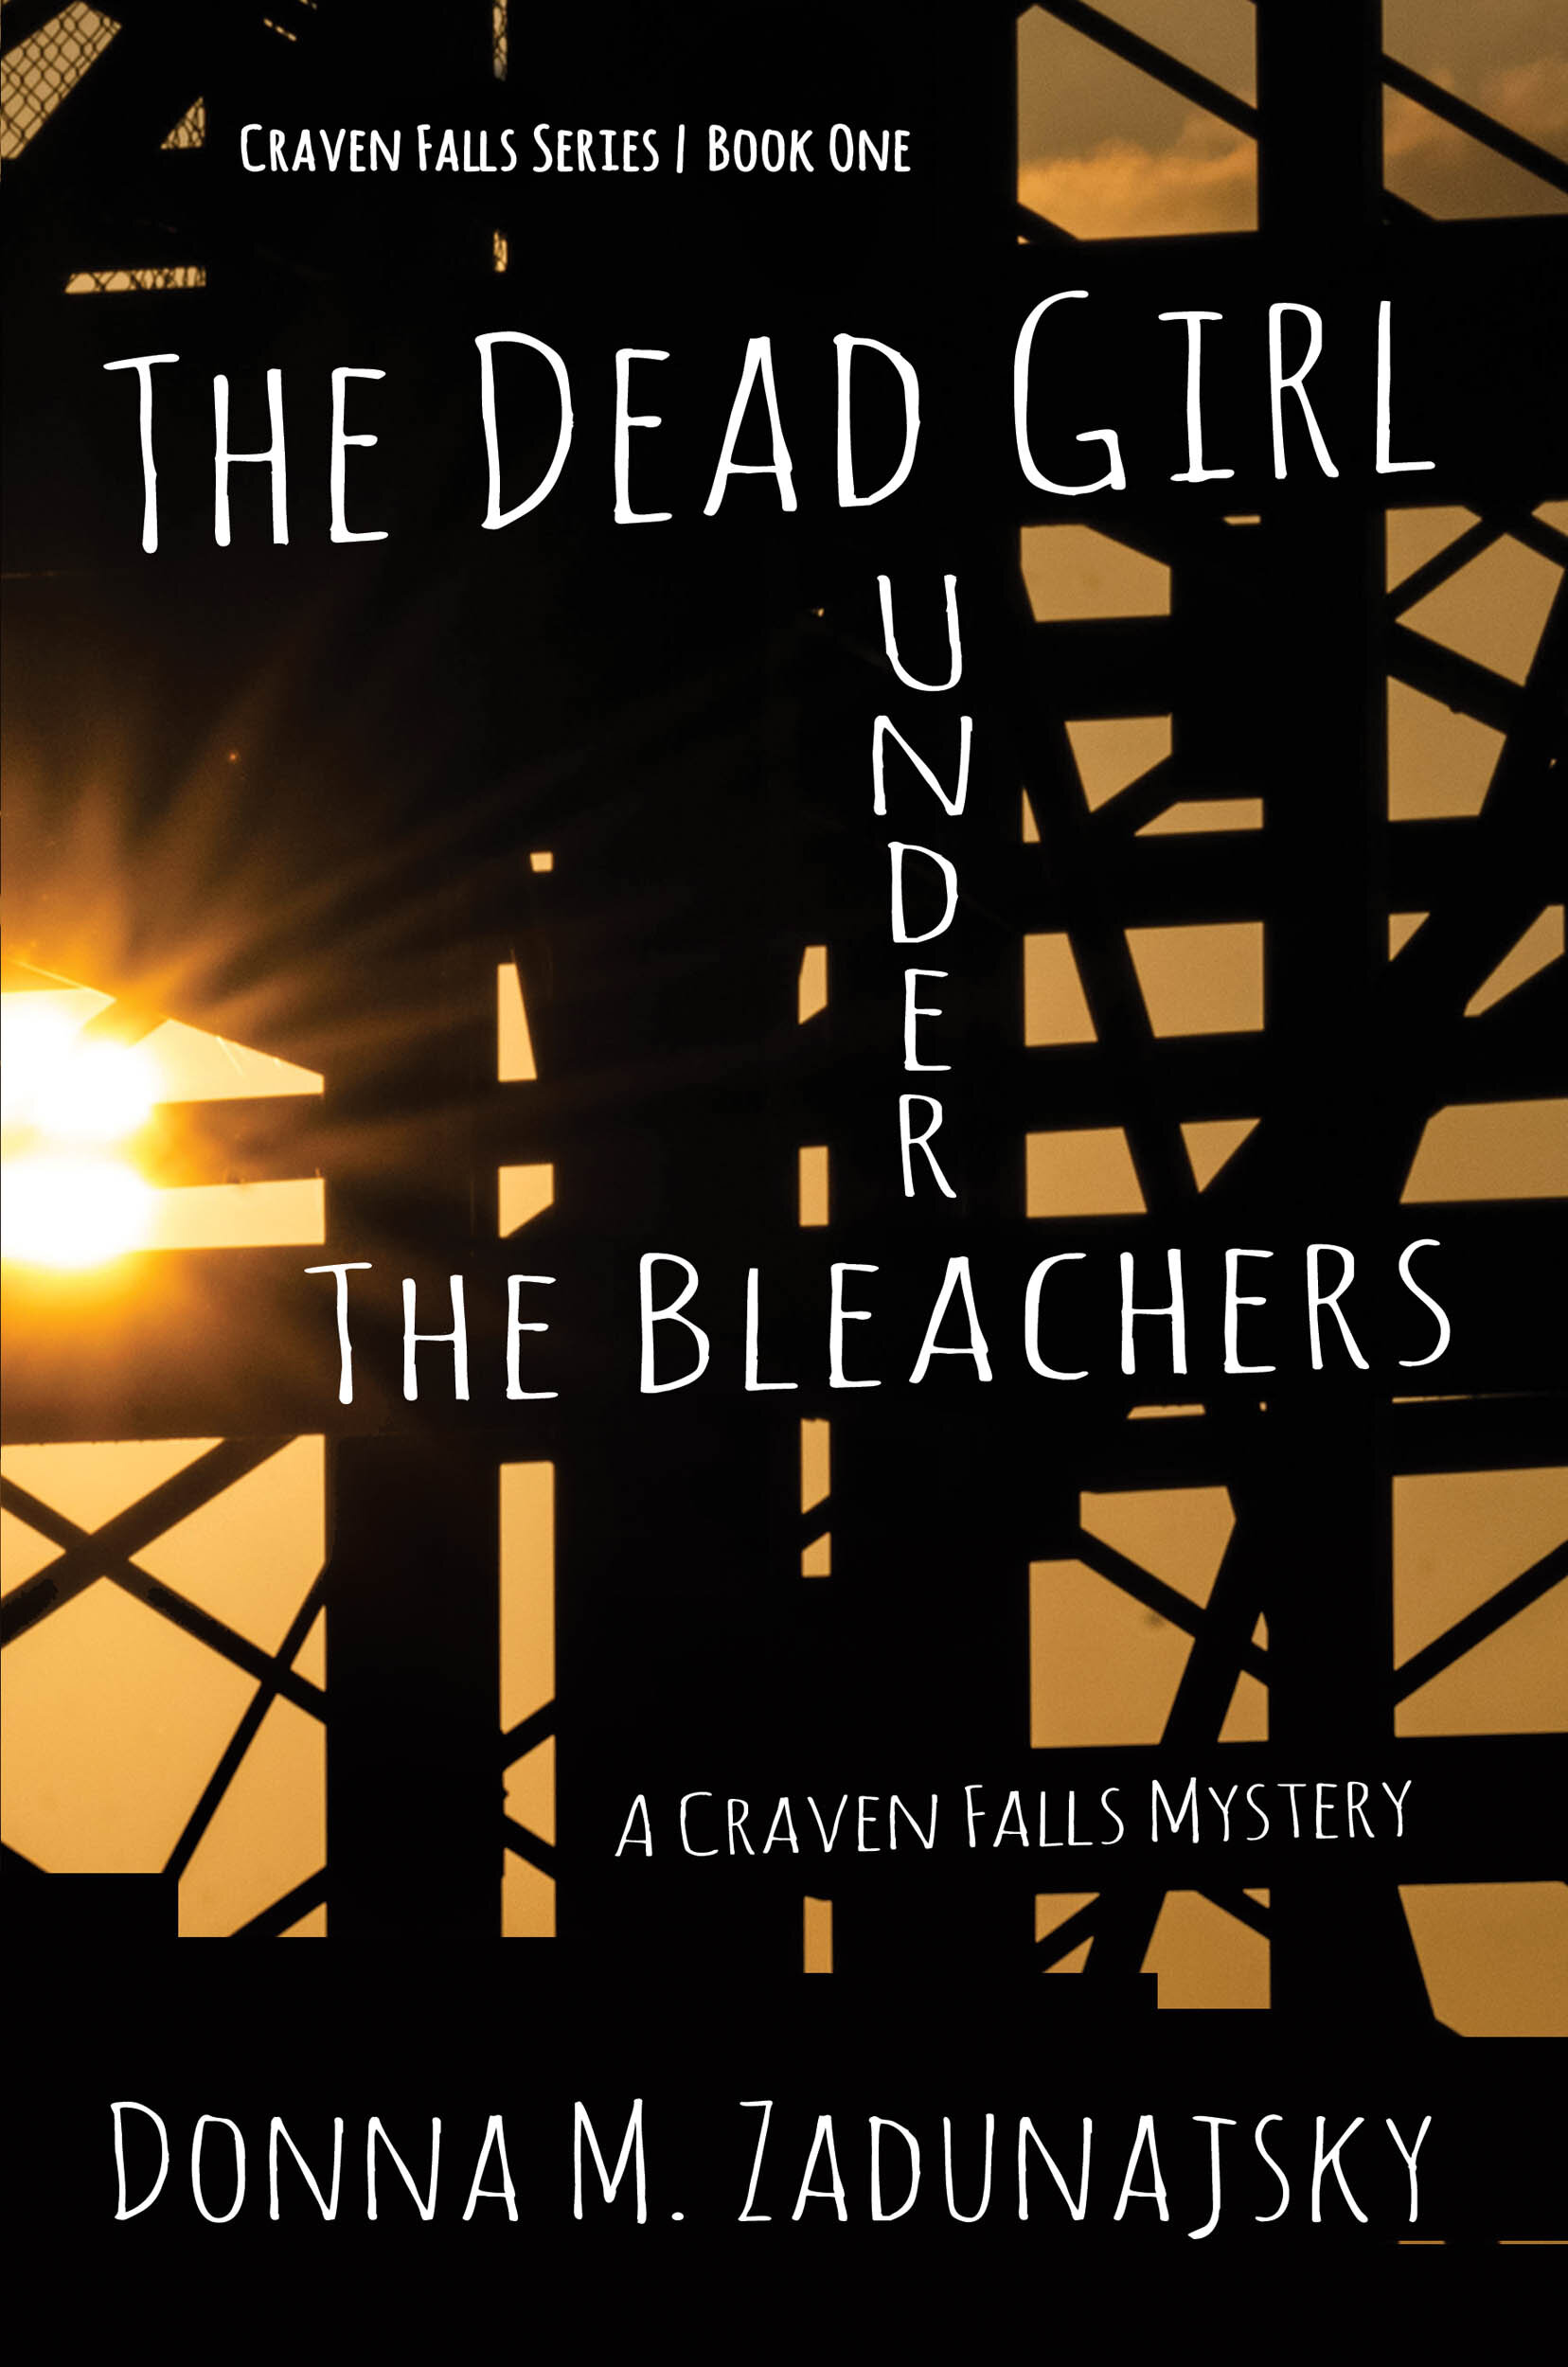 The Dead Girl Under the Bleachers